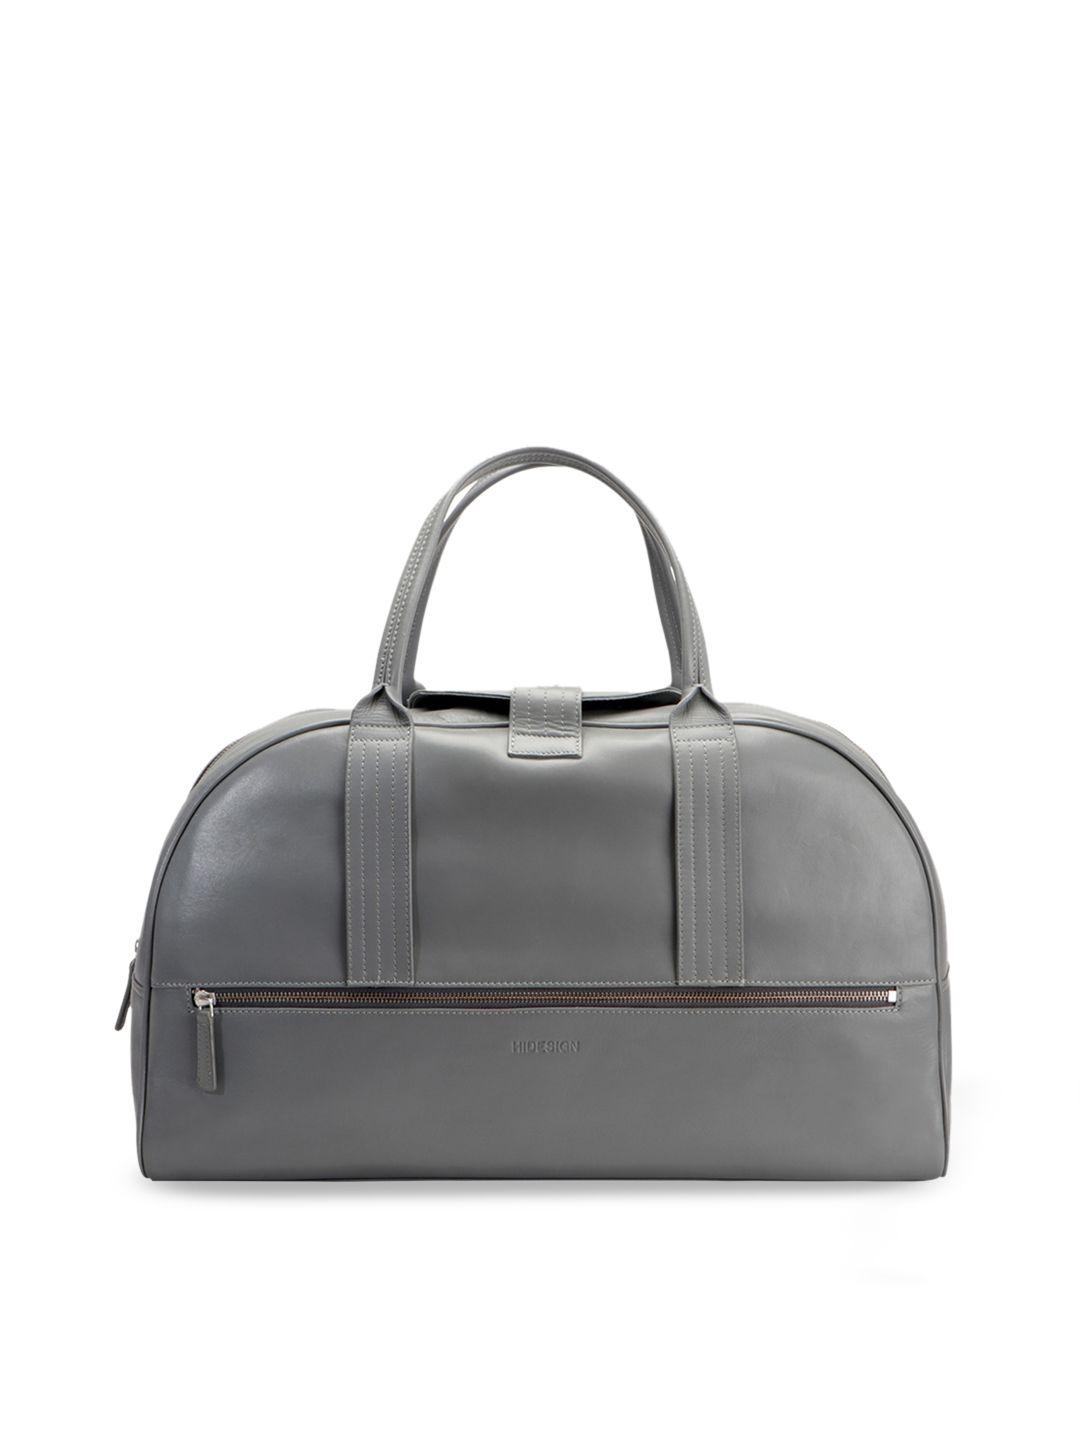 hidesign men grey solid leather duffel bag